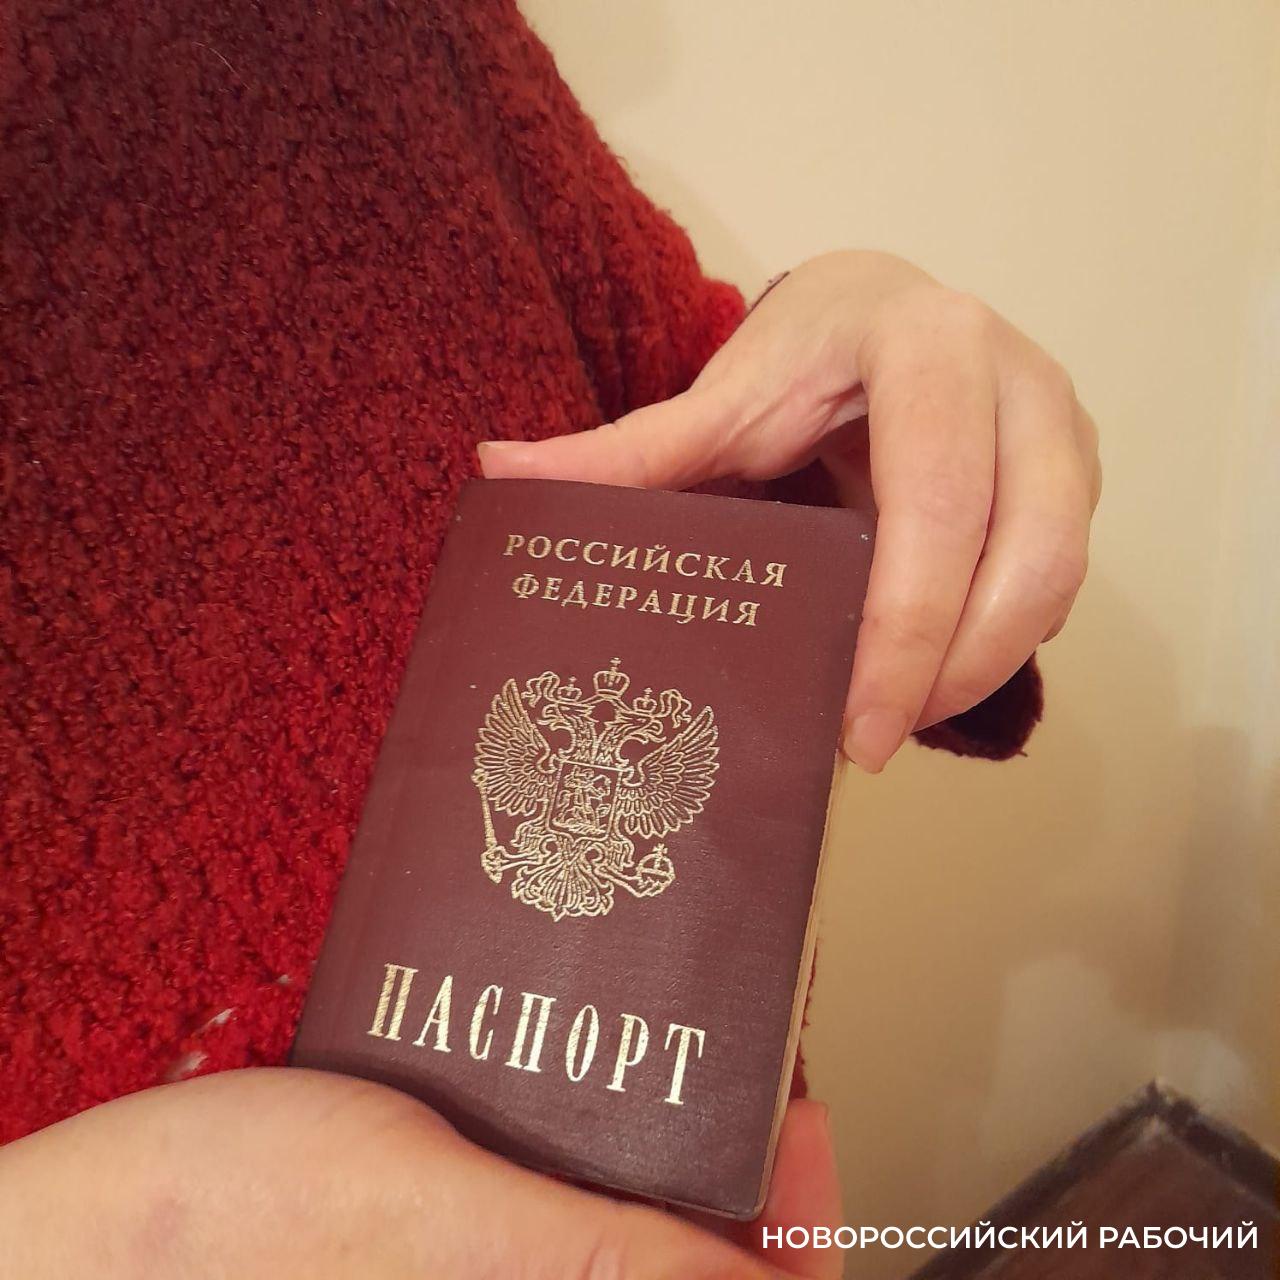 Развод и девичья фамилия! Почему еще в Новороссийске меняют паспортные данные